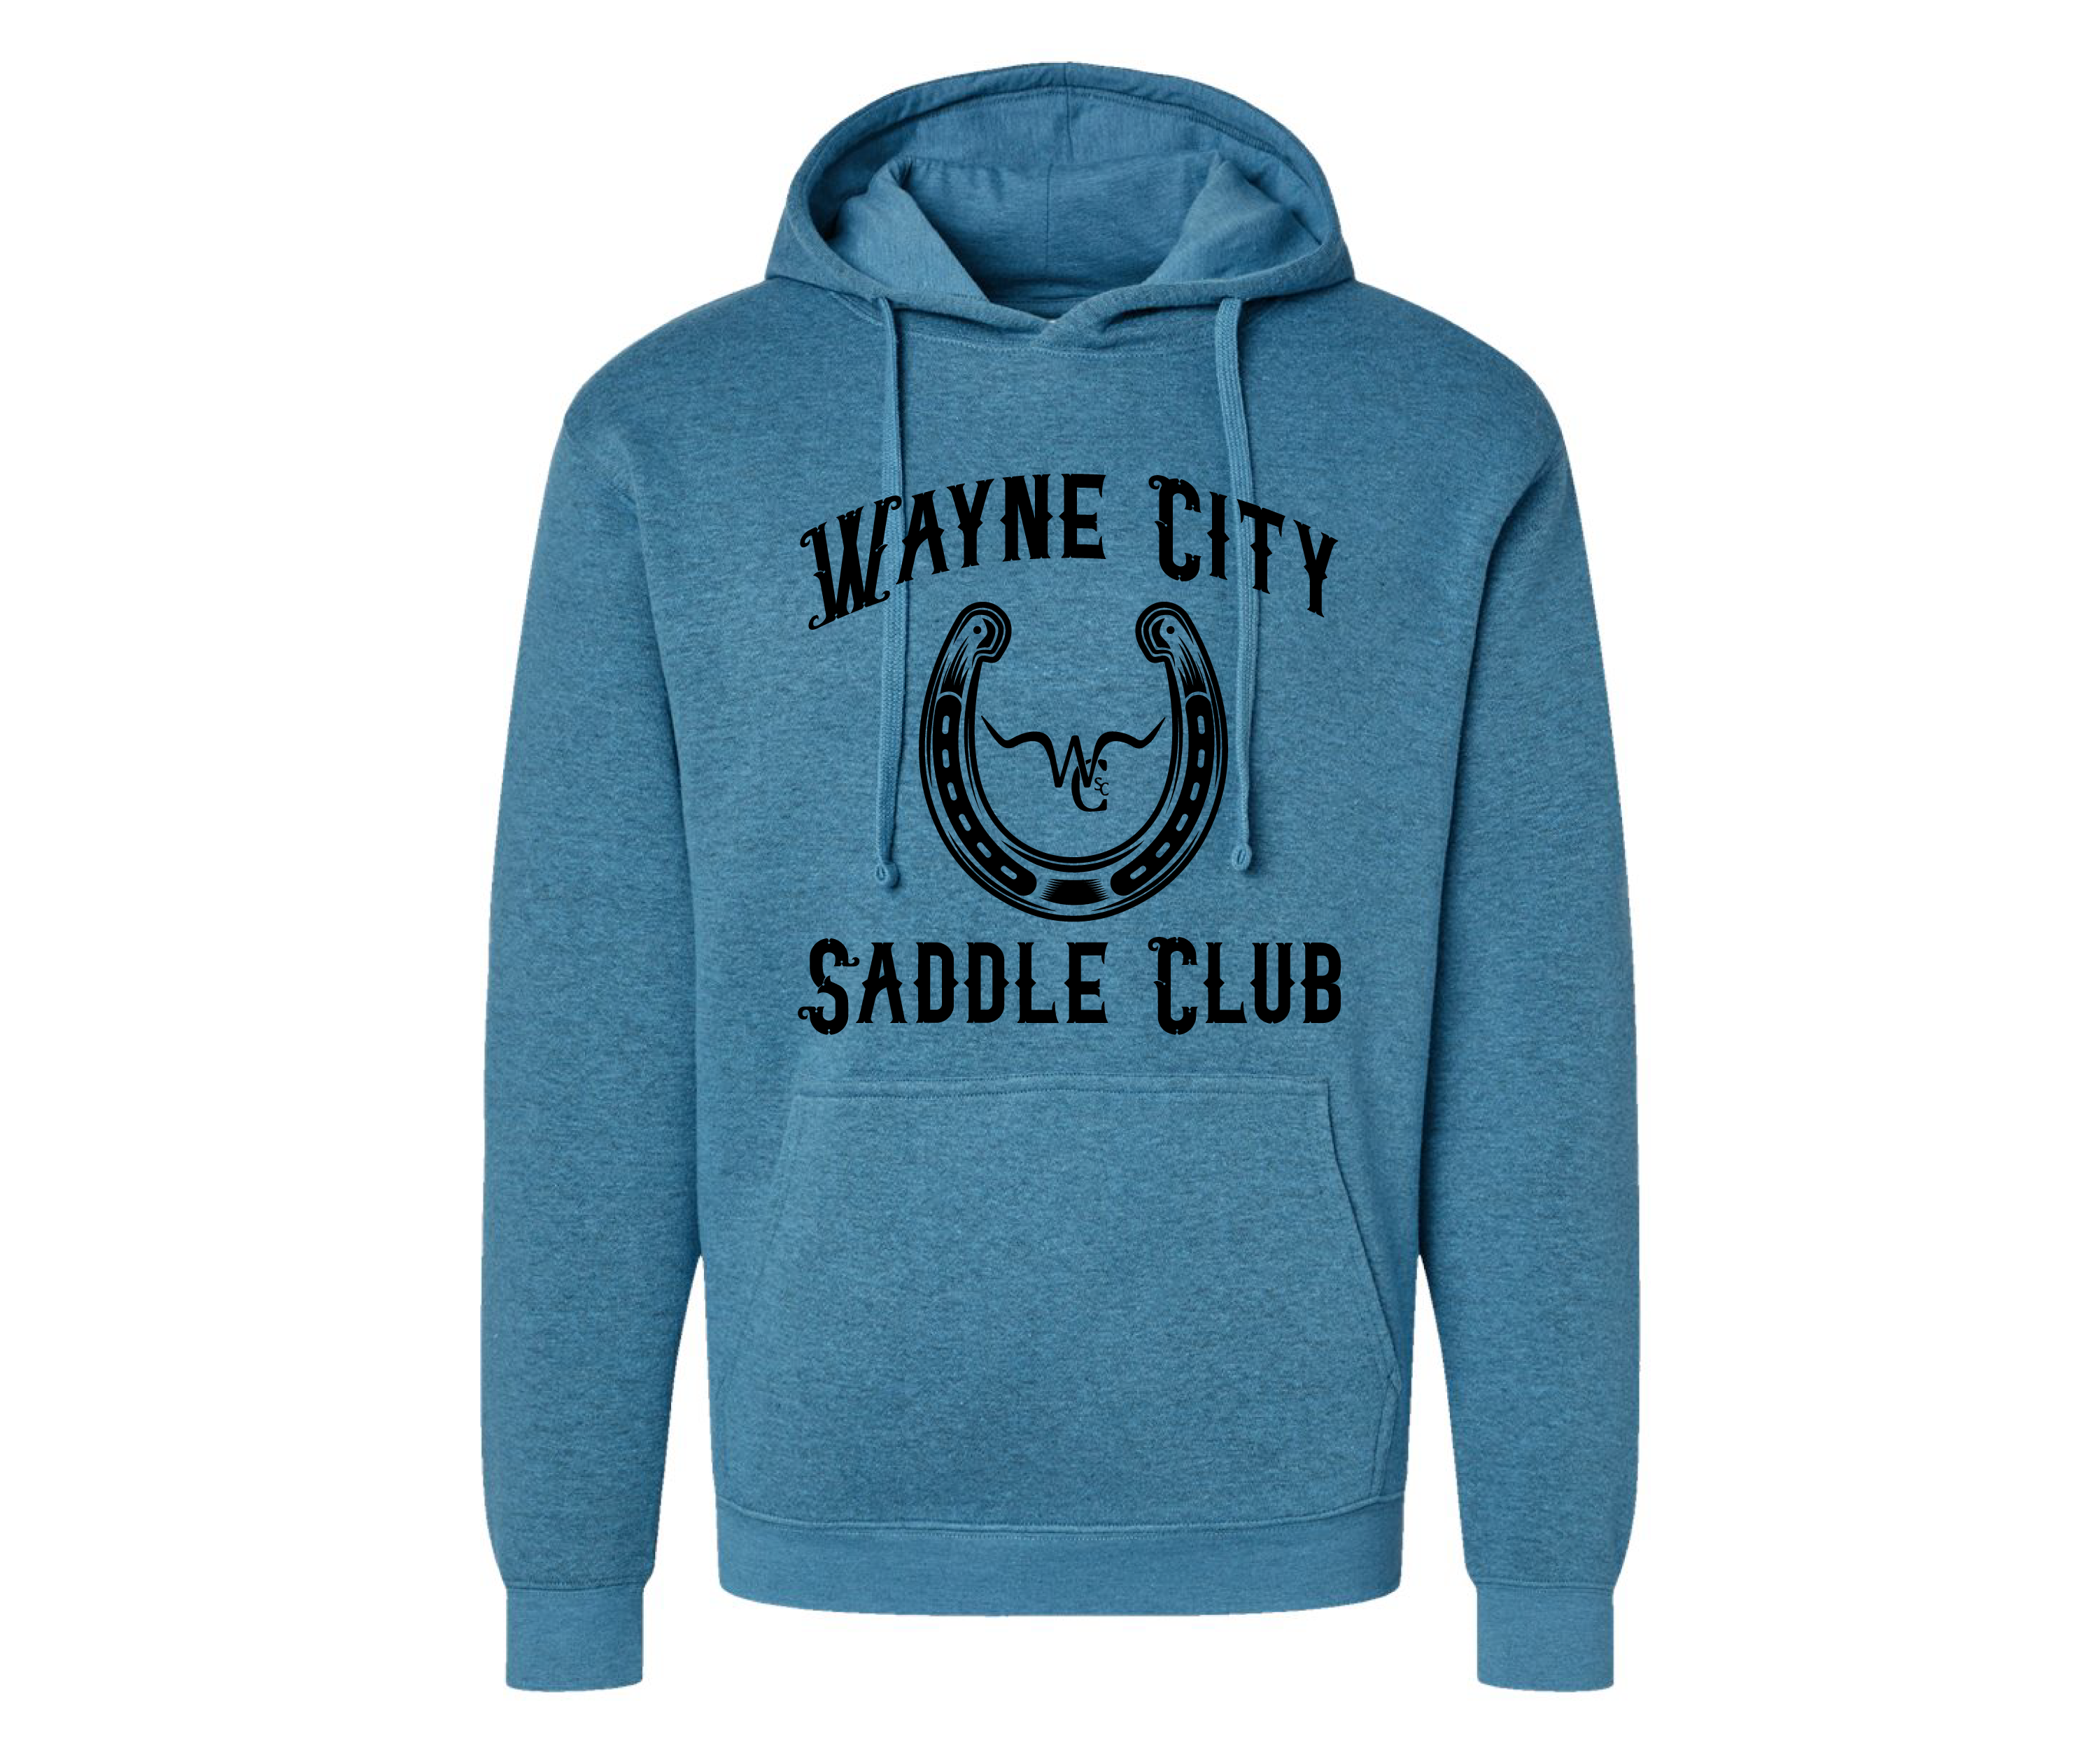 Wayne City Saddle Club Unisex Hooded Sweatshirts